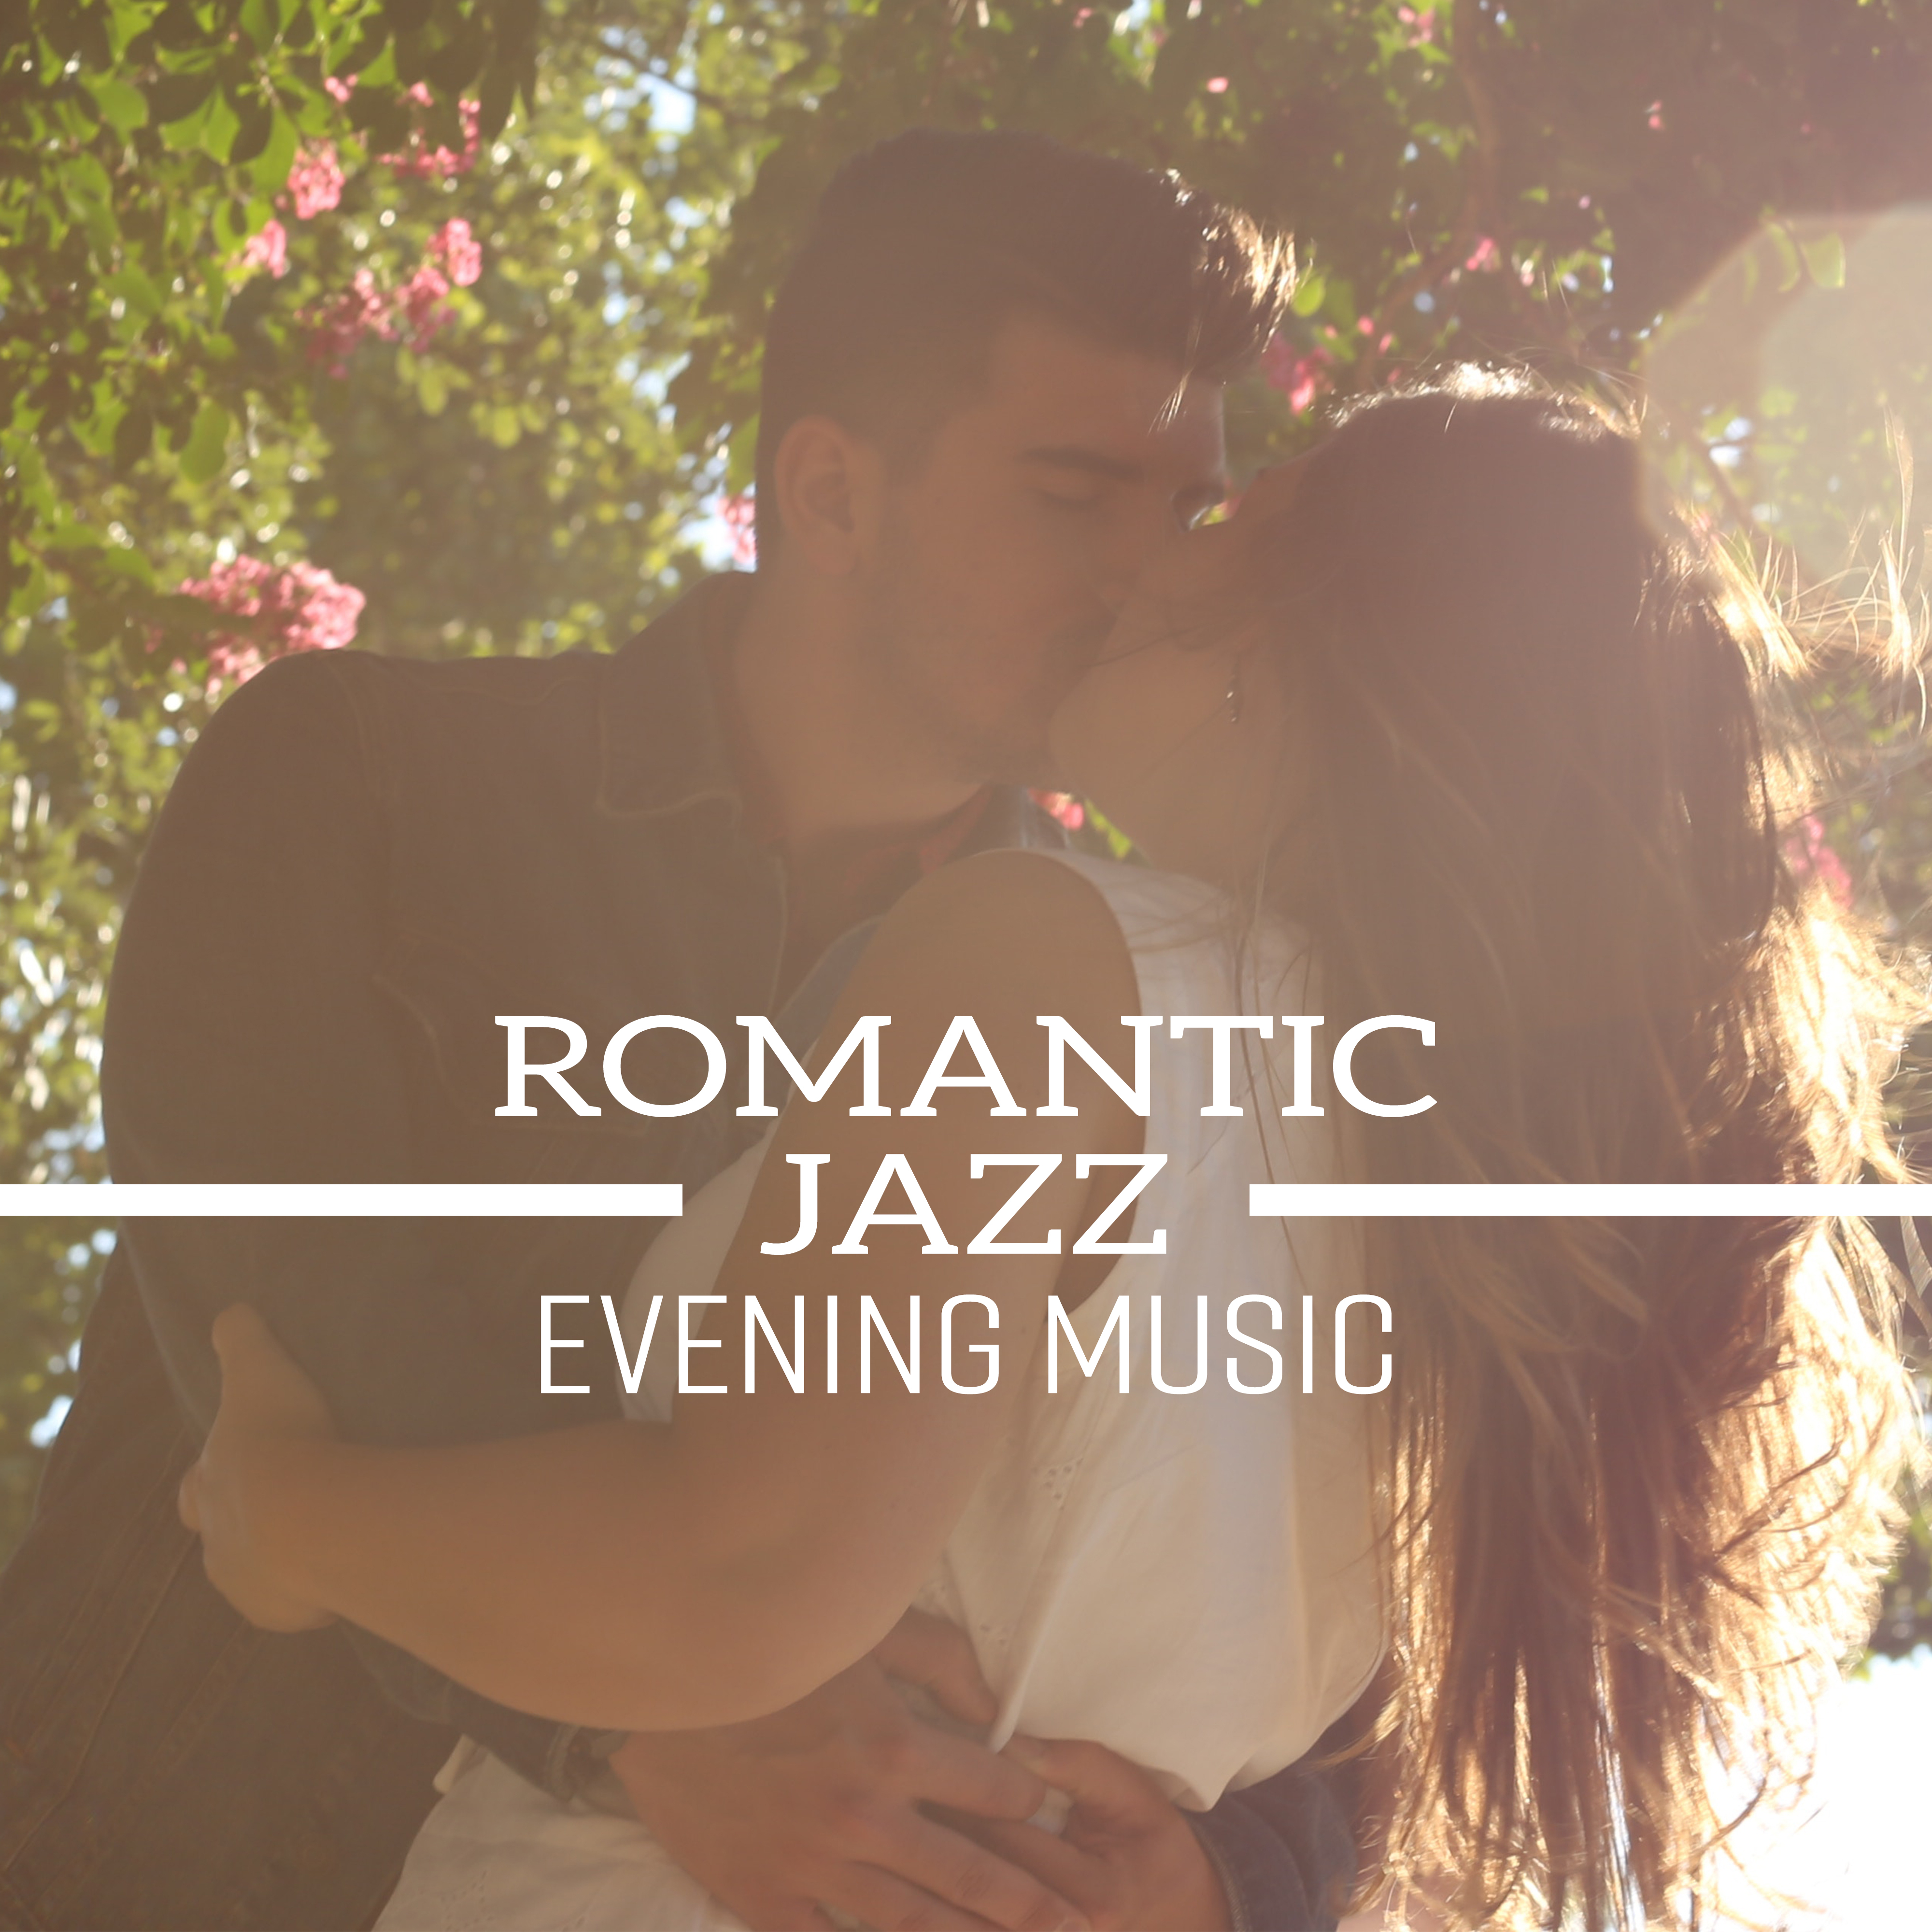 Romantic Jazz Evening Music